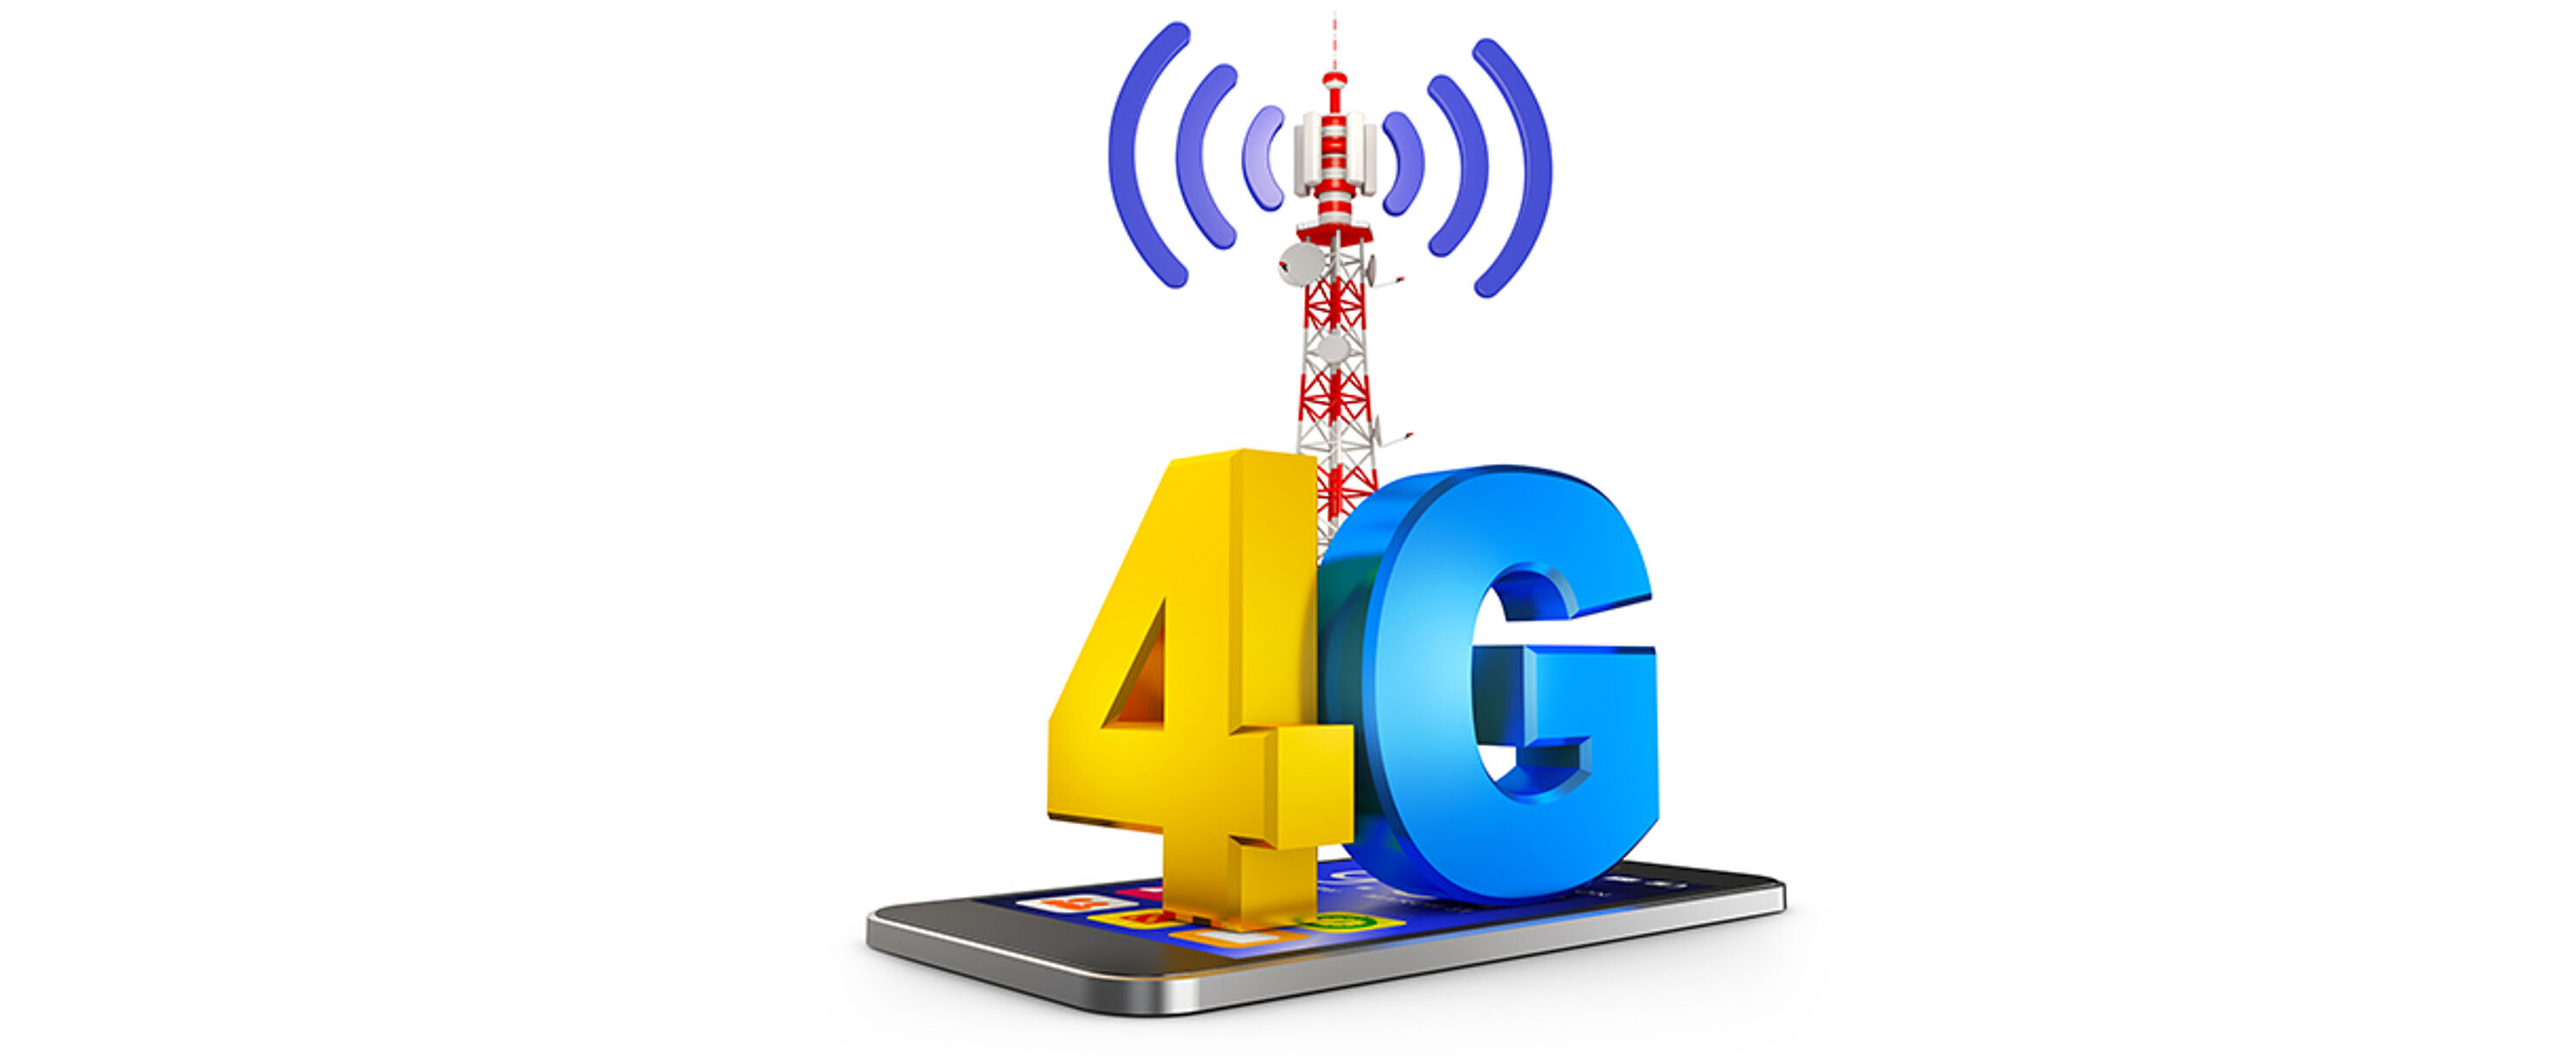 Die Tage von 3G sind gezählt, dafür wird 4G/LTE gestärkt